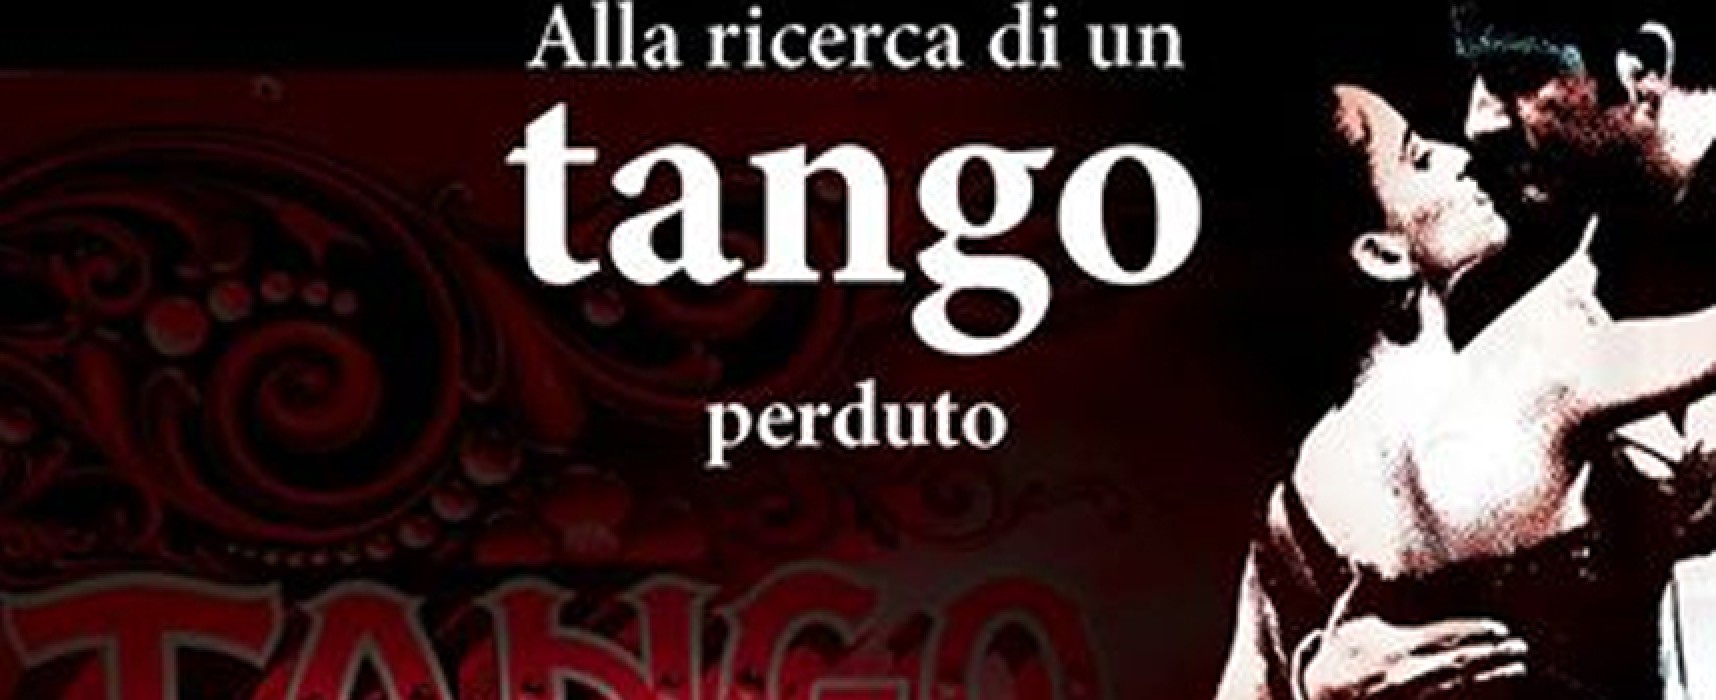 Pomeriggi all’ombra di un libro, oggi “Alla Ricerca di un tango perduto”